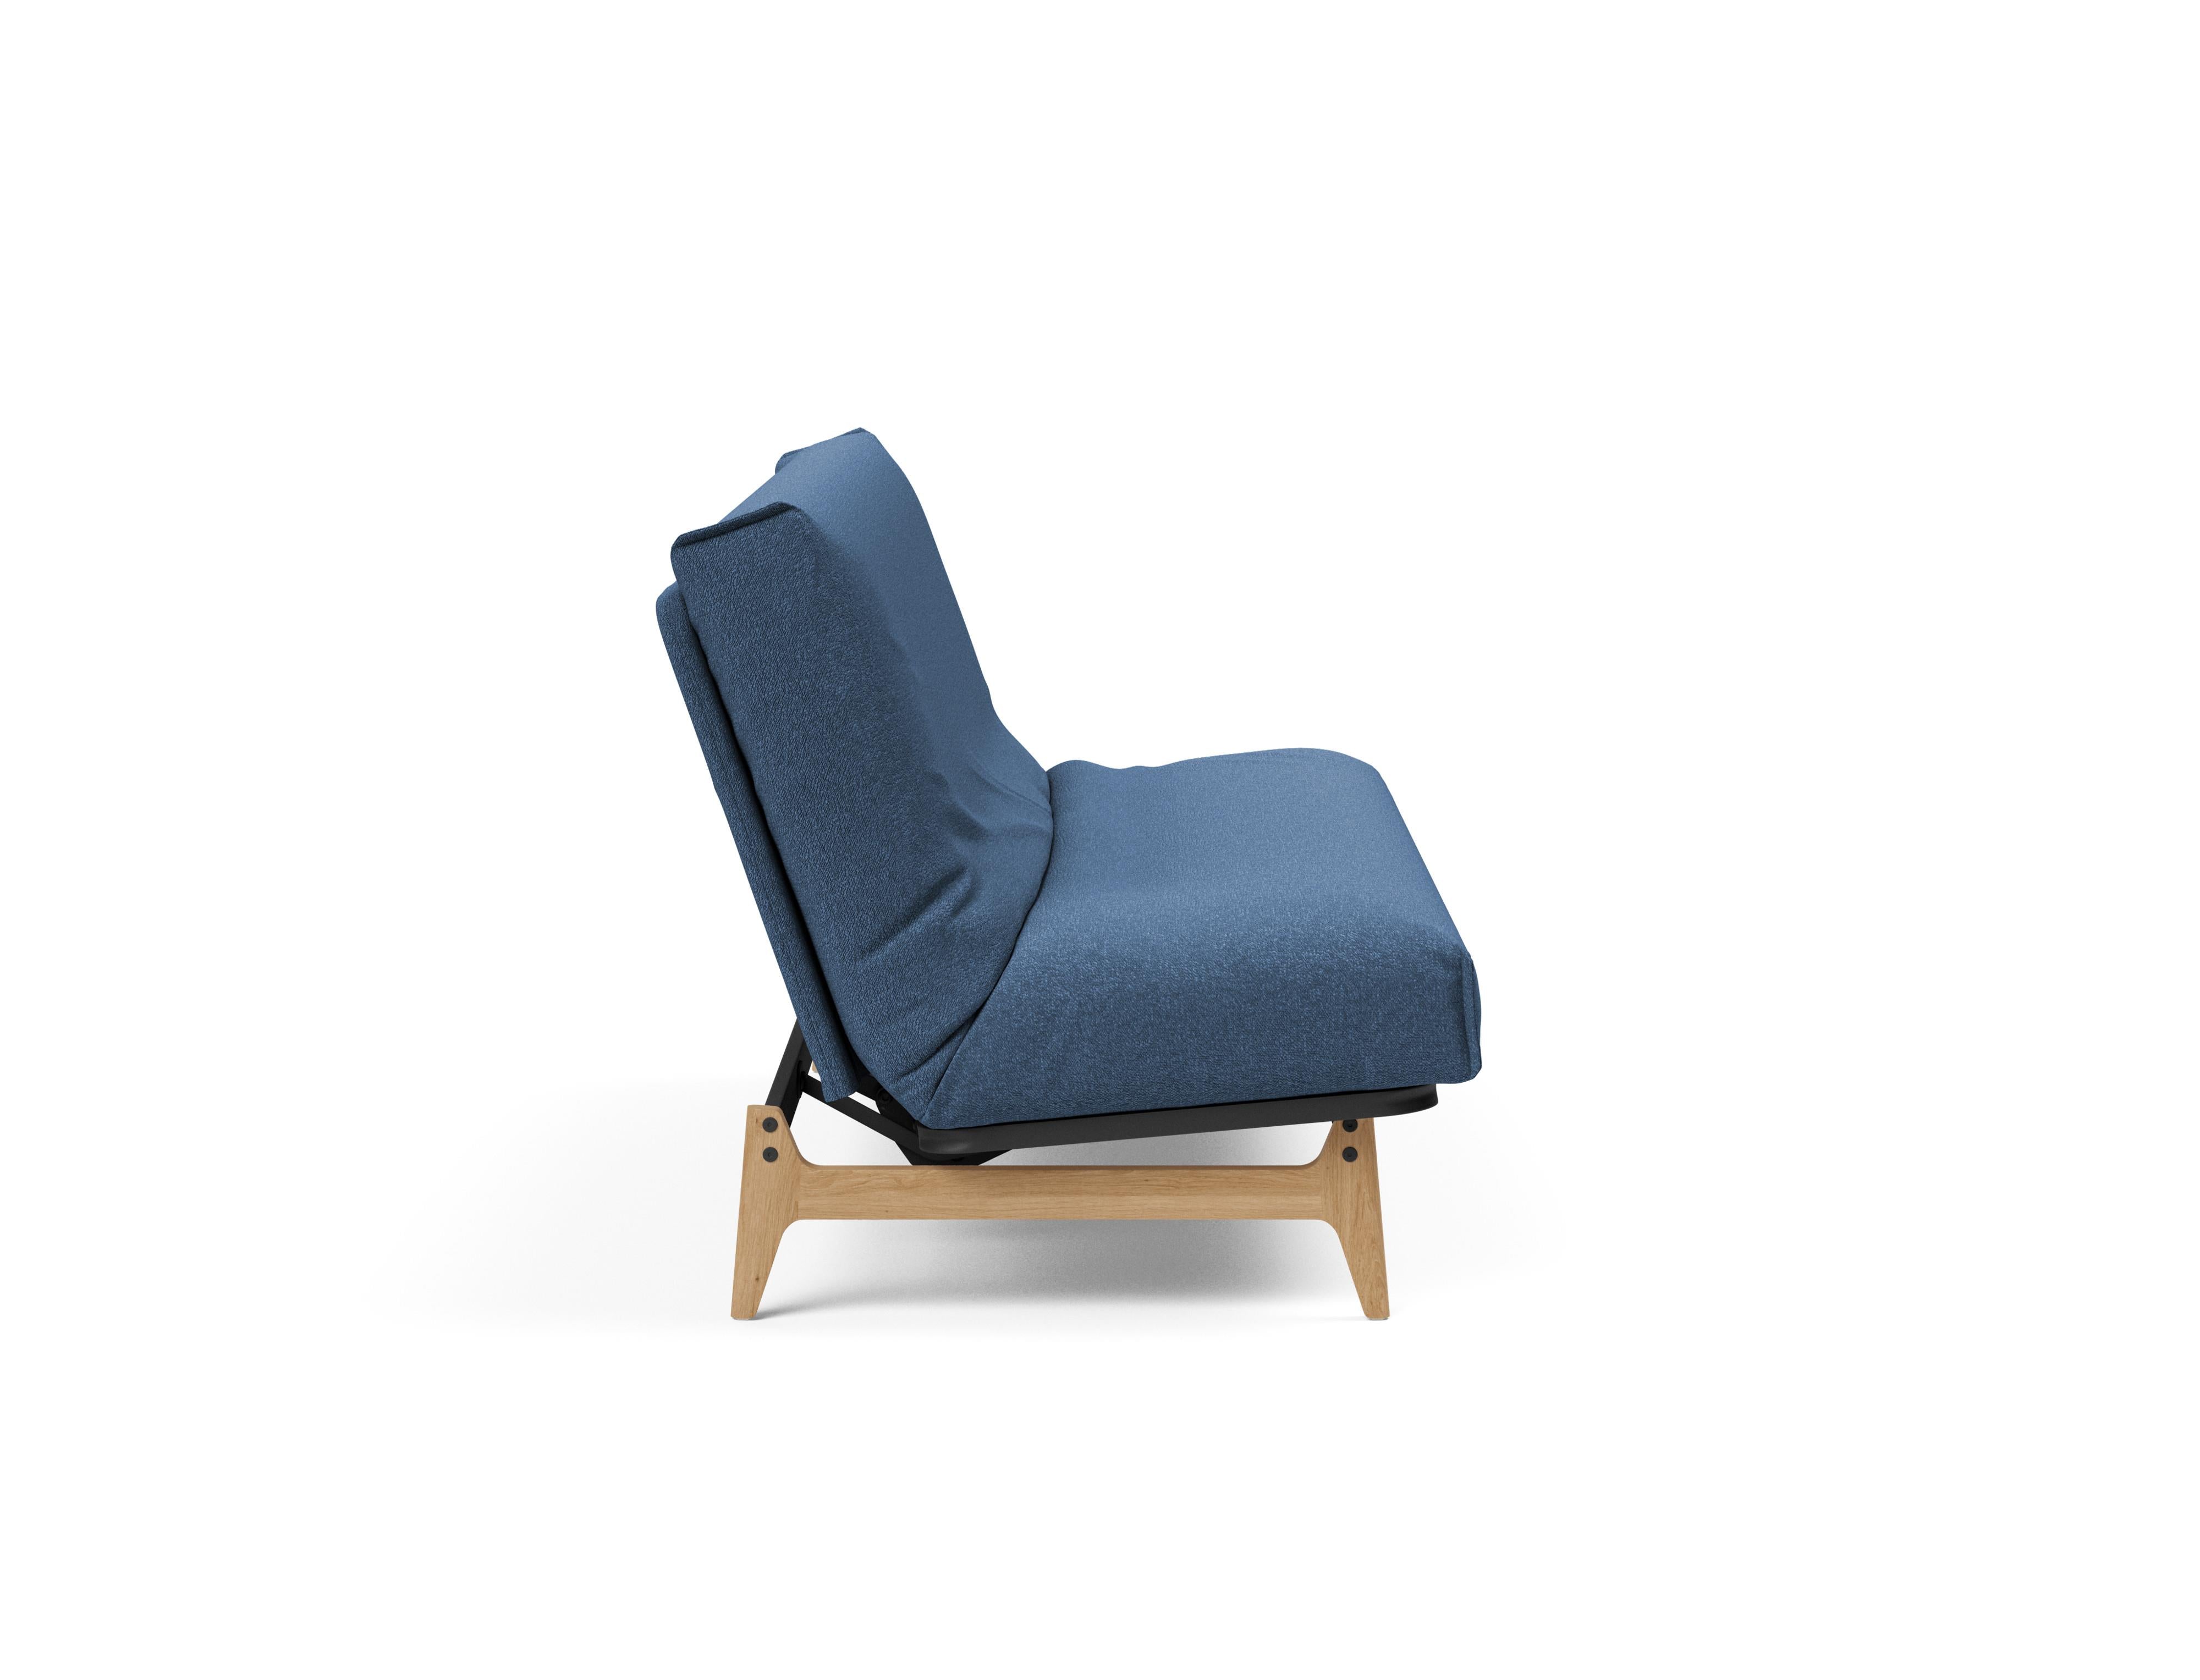 Aslak 140 Bettsofa Nordic Cover in Blau 537 präsentiert im Onlineshop von KAQTU Design AG. Bettsofa ist von Innovation Living